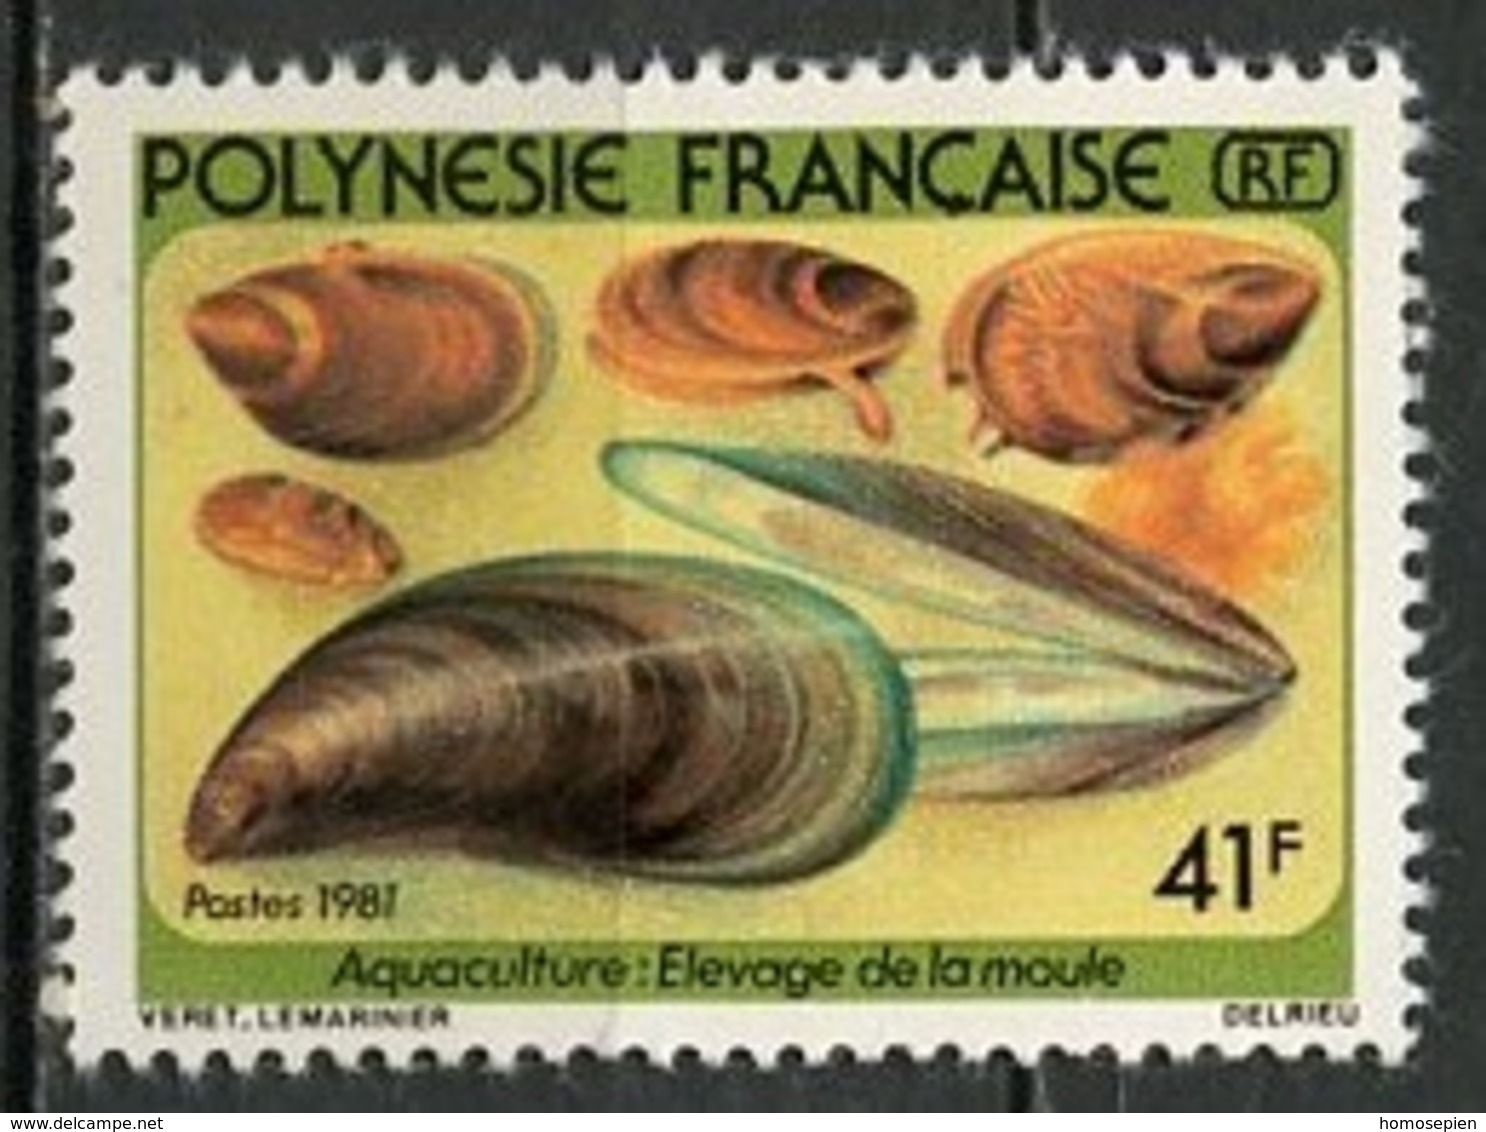 Polynésie Française - Polynesien - Polynesia 1981 Y&T N°164 - Michel N°329 *** - 41f Aquaculture - Neufs